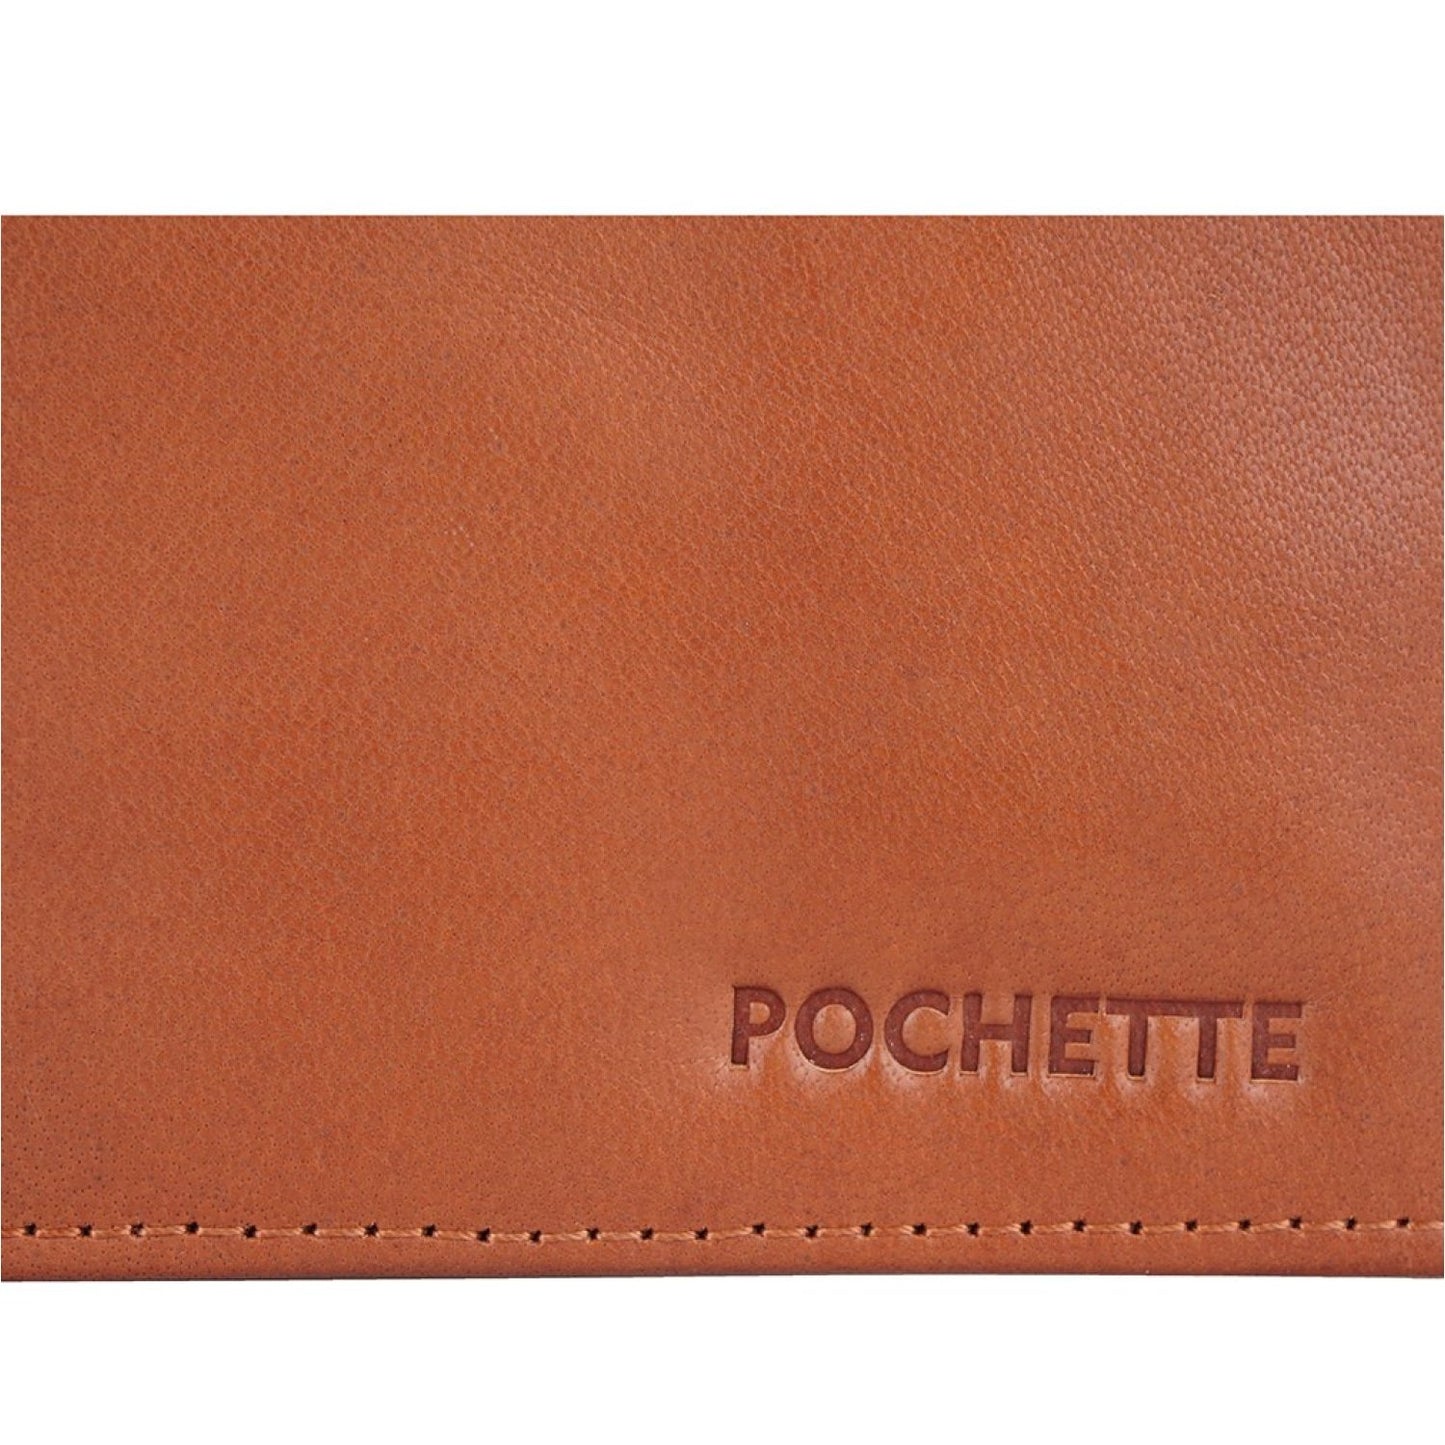 Pochette Men’s Tan Wallet - wallets